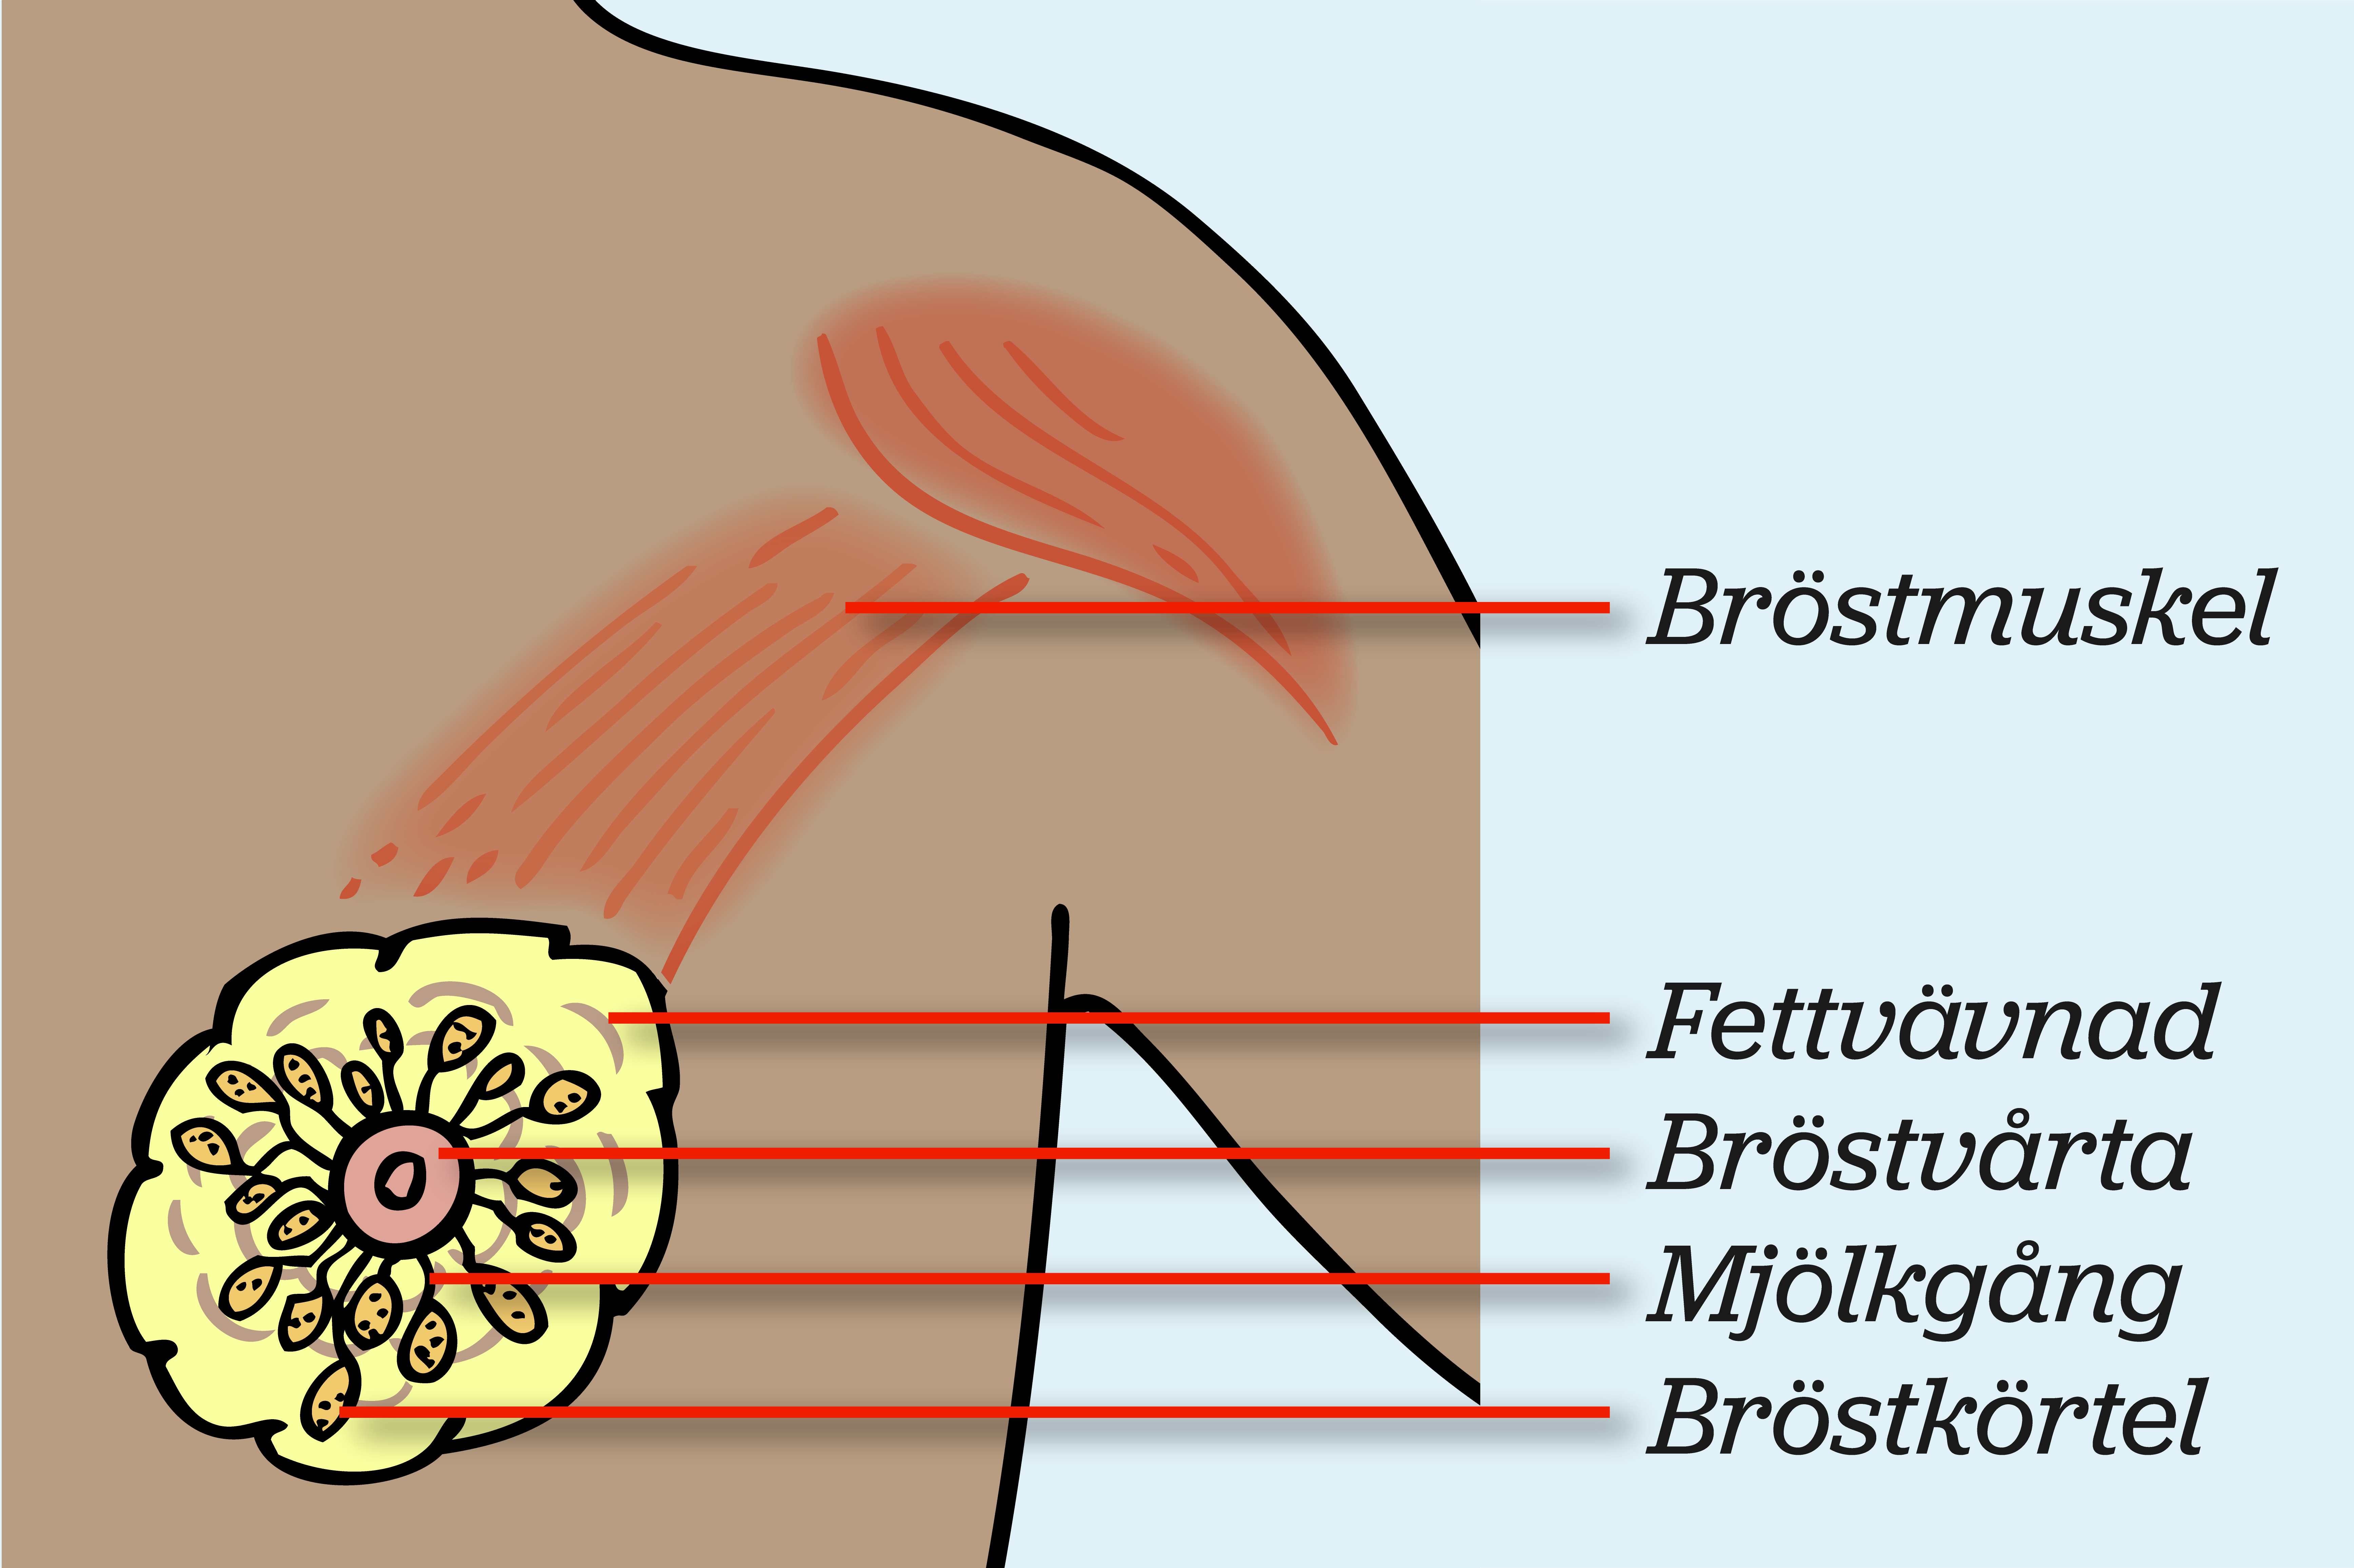 Inuti bröstet med streck som pekar ut olika delar, illustration.